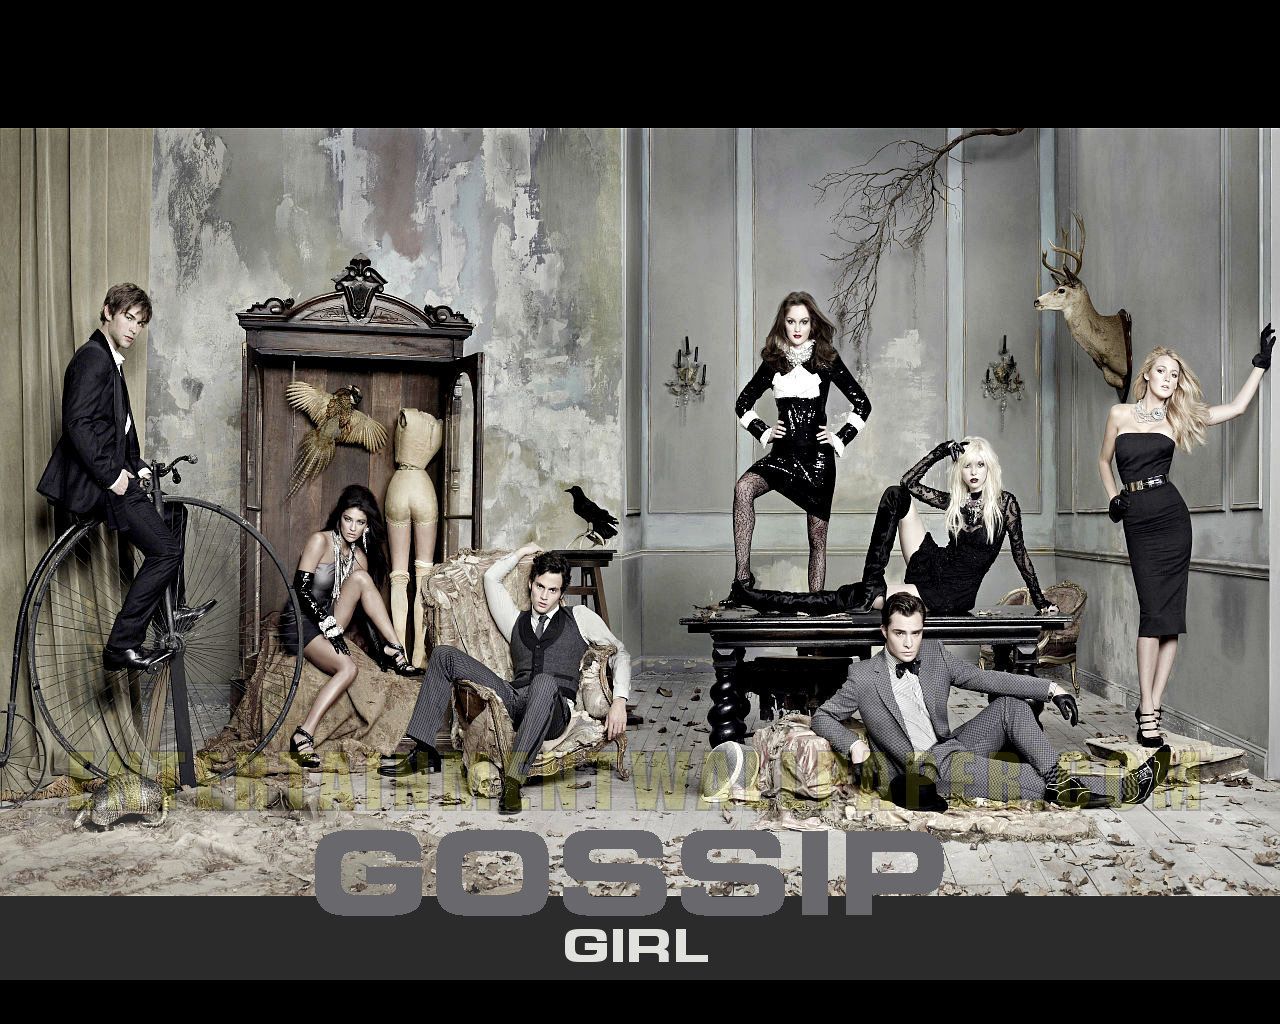 Gossip Girl wallpapers - Gossip Girl Wallpaper (12054962) - Fanpop